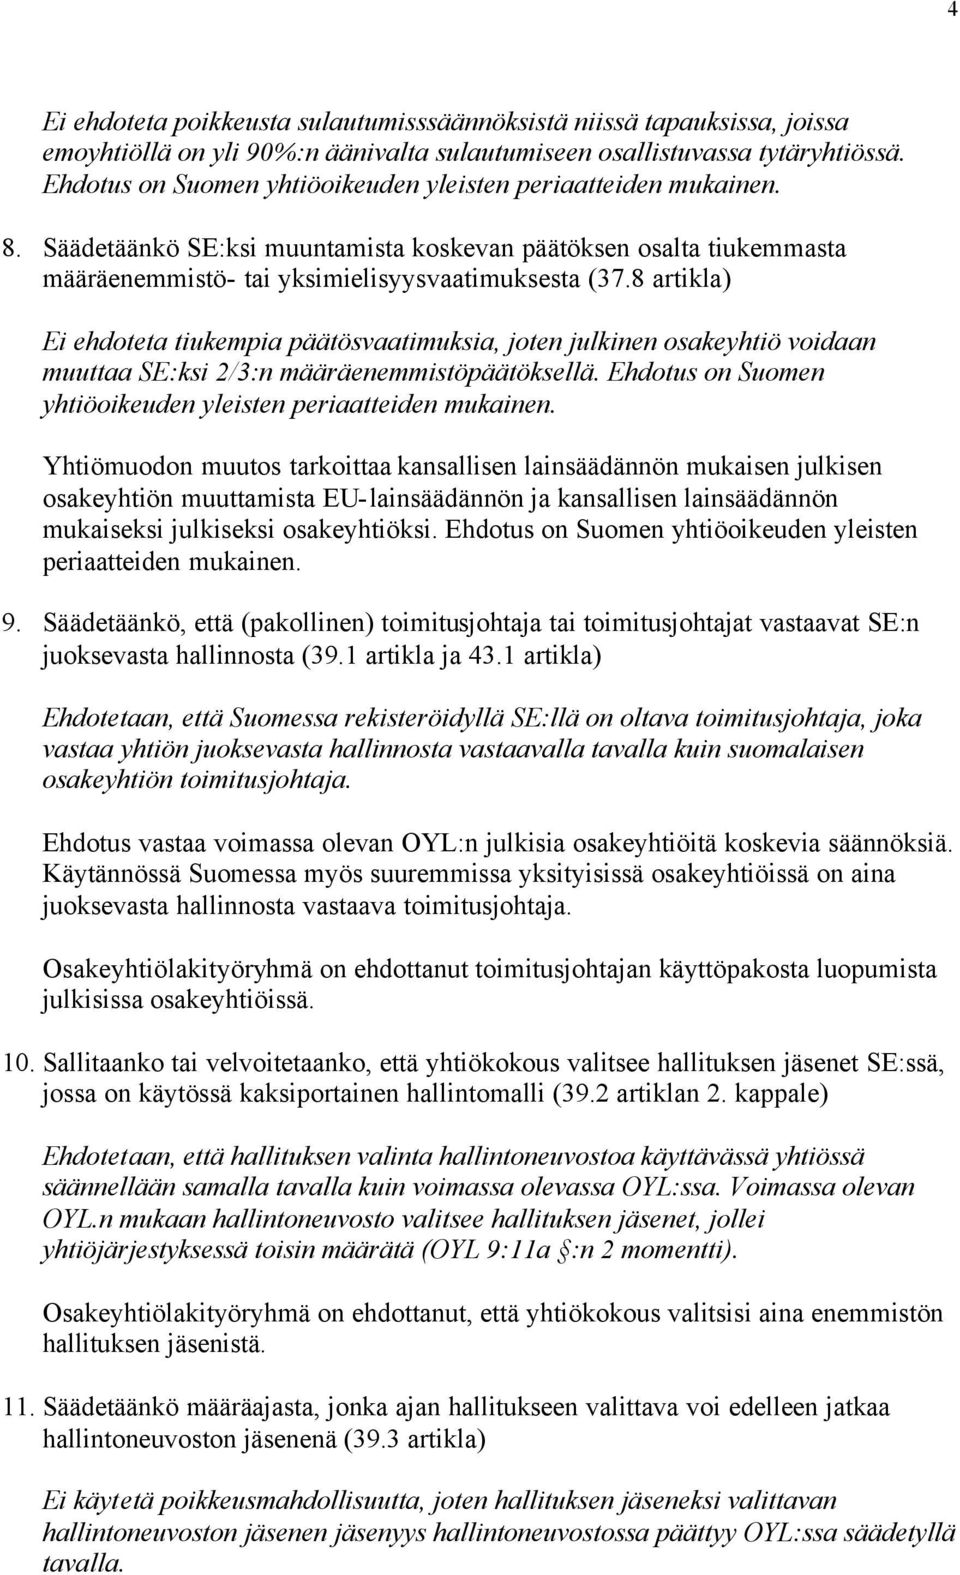 8 artikla) Ei ehdoteta tiukempia päätösvaatimuksia, joten julkinen osakeyhtiö voidaan muuttaa SE:ksi 2/3:n määräenemmistöpäätöksellä. Ehdotus on Suomen yhtiöoikeuden yleisten periaatteiden mukainen.